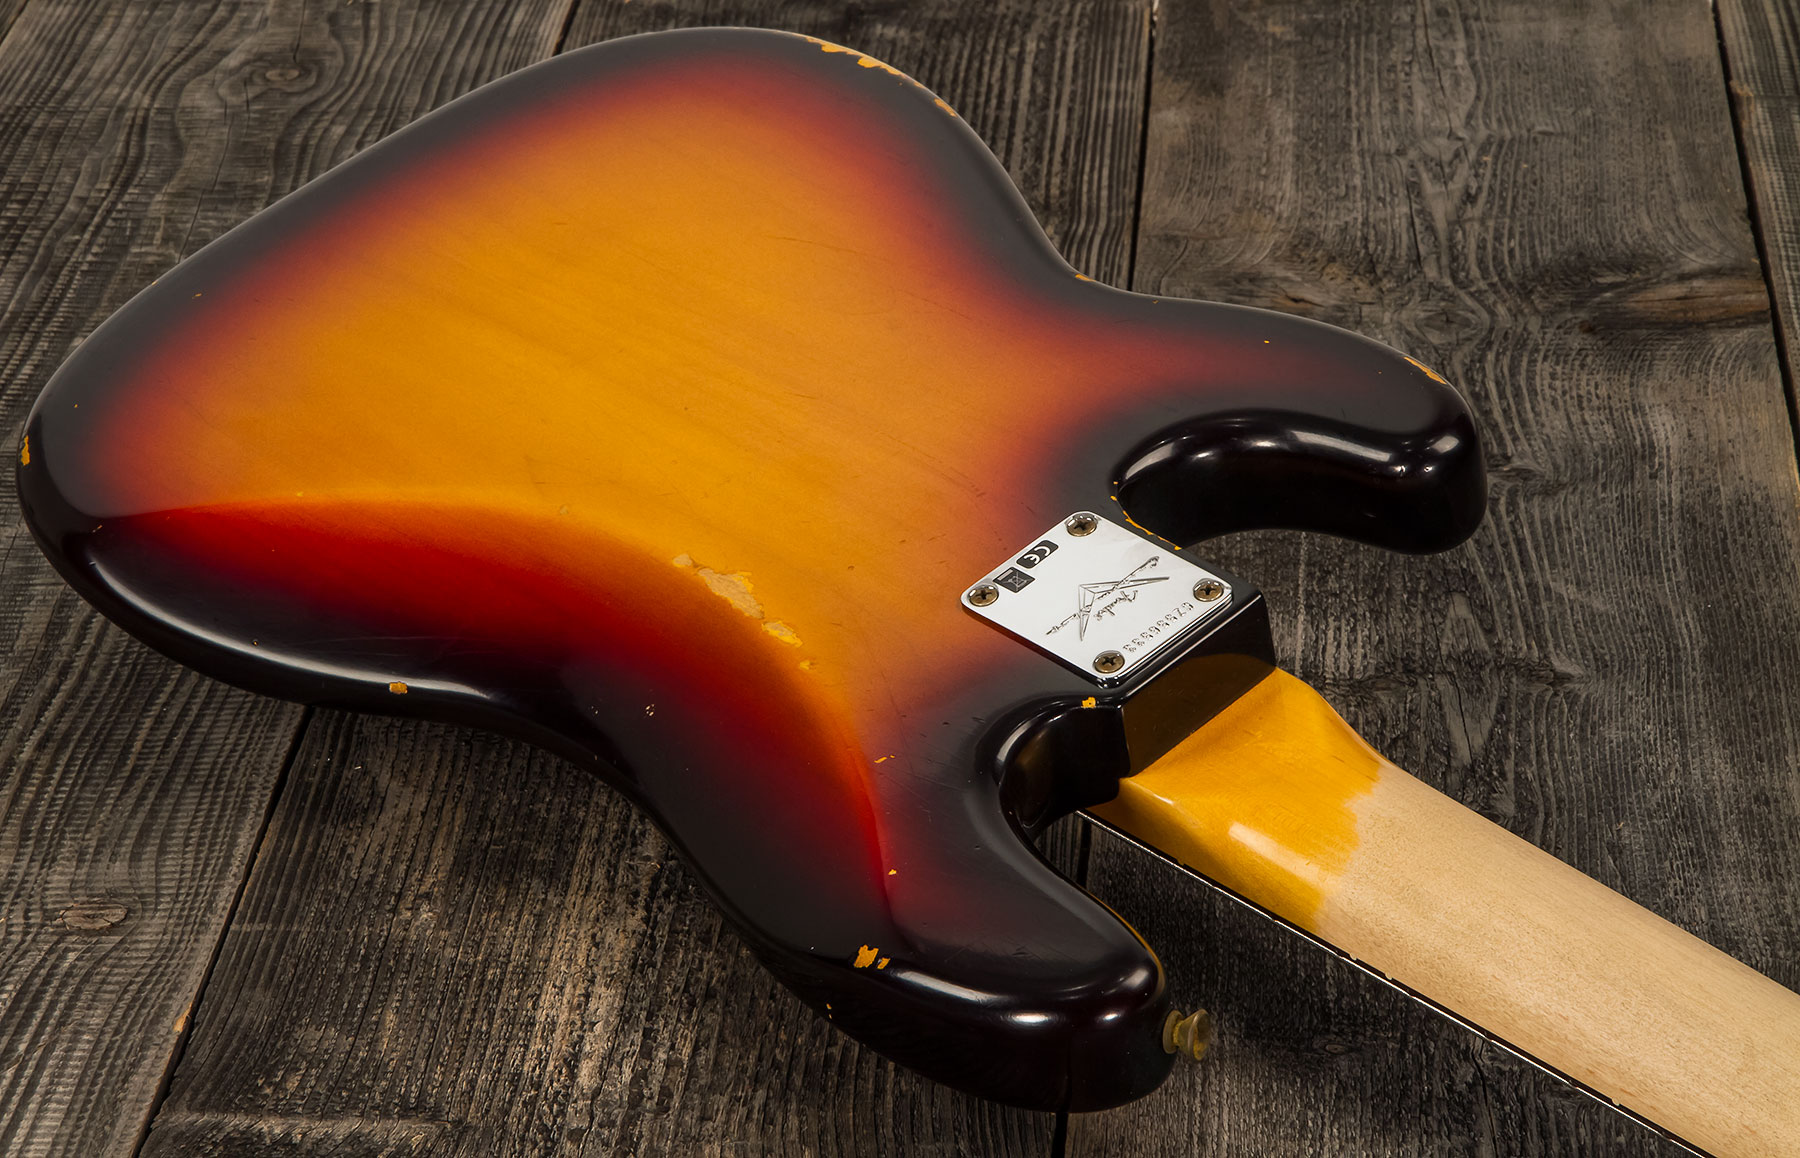 Fender Custom Shop Precision Bass 1961 Rw #cz556533 - Relic 3-color Sunburst - Solidbody E-bass - Variation 3